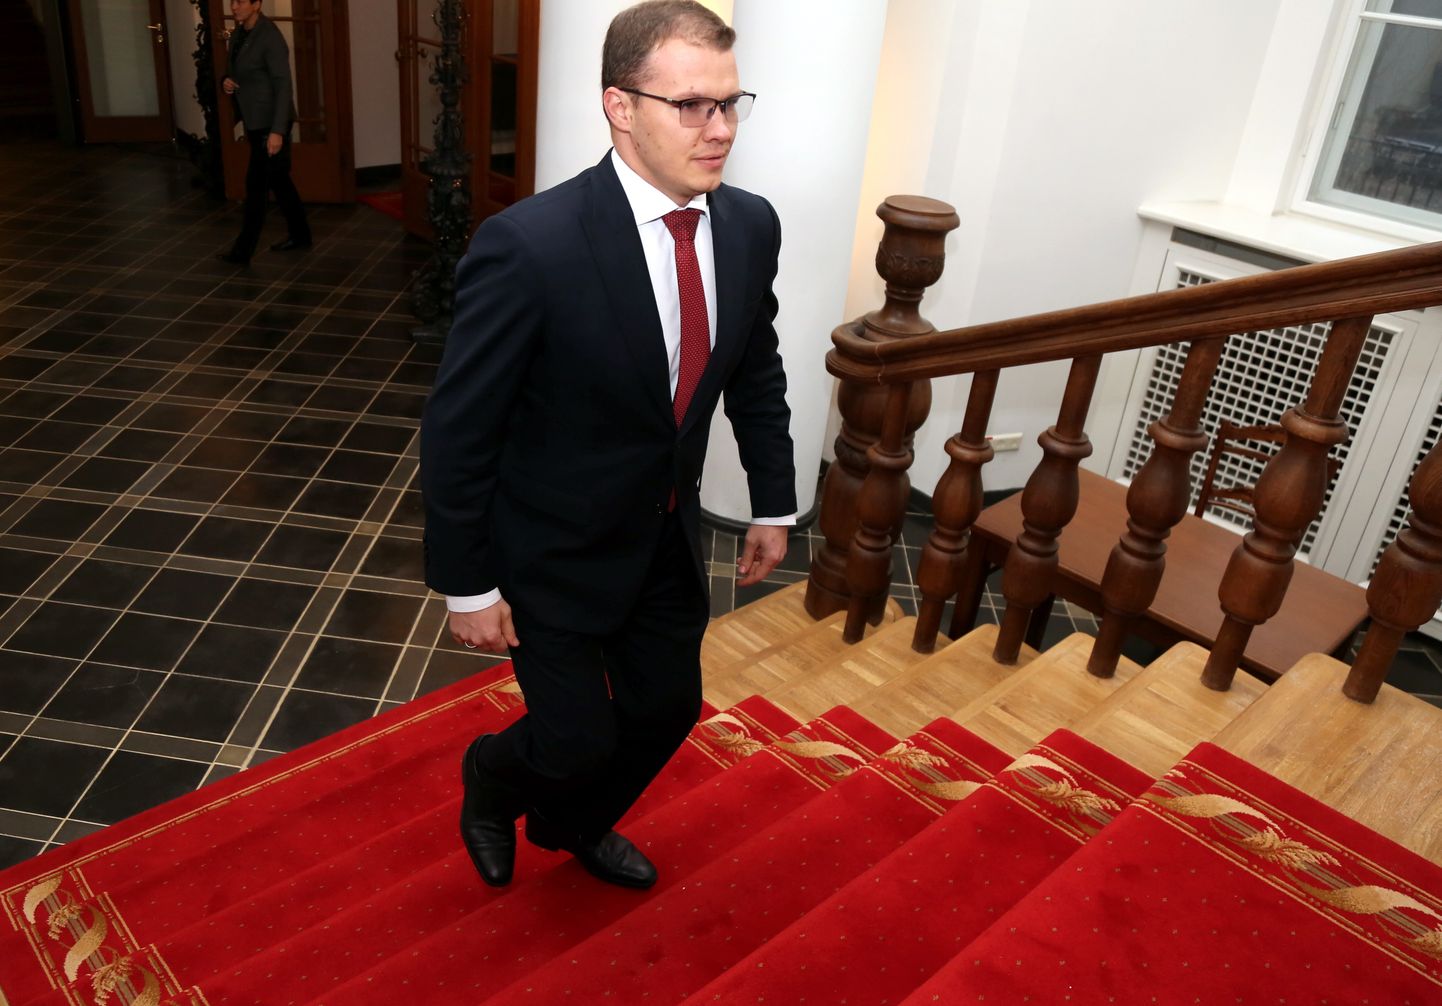 Nacionālās apvienības "Visu Latvijai!"-"Tēvzemei un Brīvībai/LNNK" Saeimas frakcijas priekšsēdētājs Raivis Dzintars ierodas uz tikšanos ar Valsts prezidentu Rīgas pilī, kurā pārrunās politisko partiju redzējumu par turpmāko valdības veidošanas procesu.